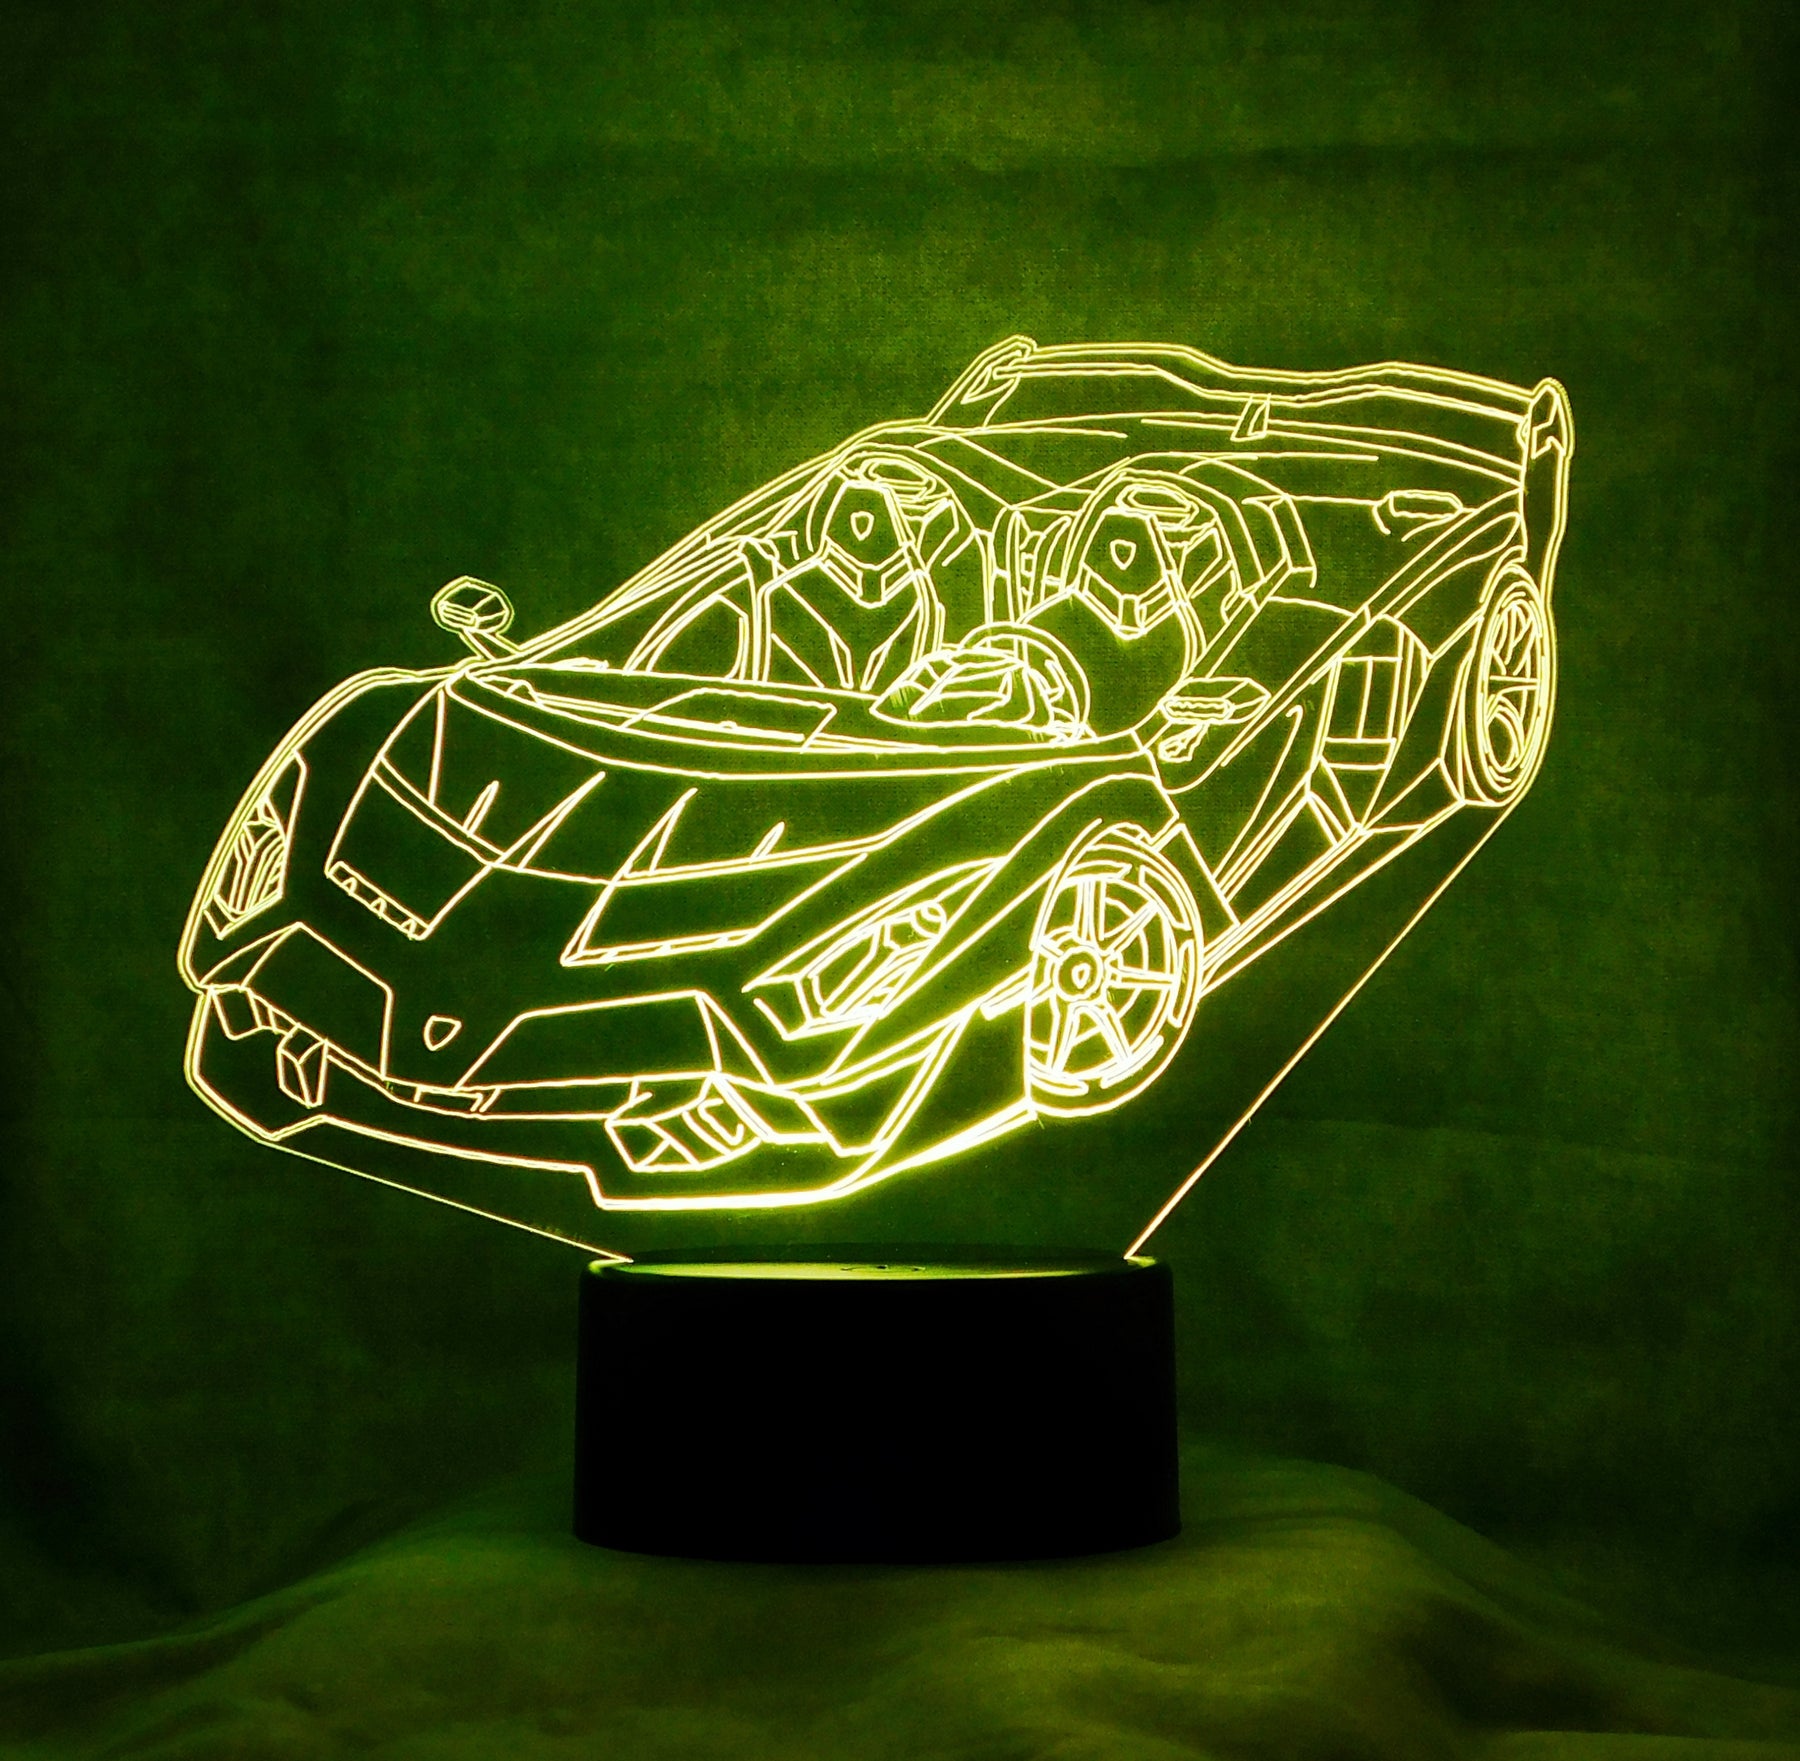 Lamborghini Roaster 3-D Optical Illusion Multicolored LED Lamp